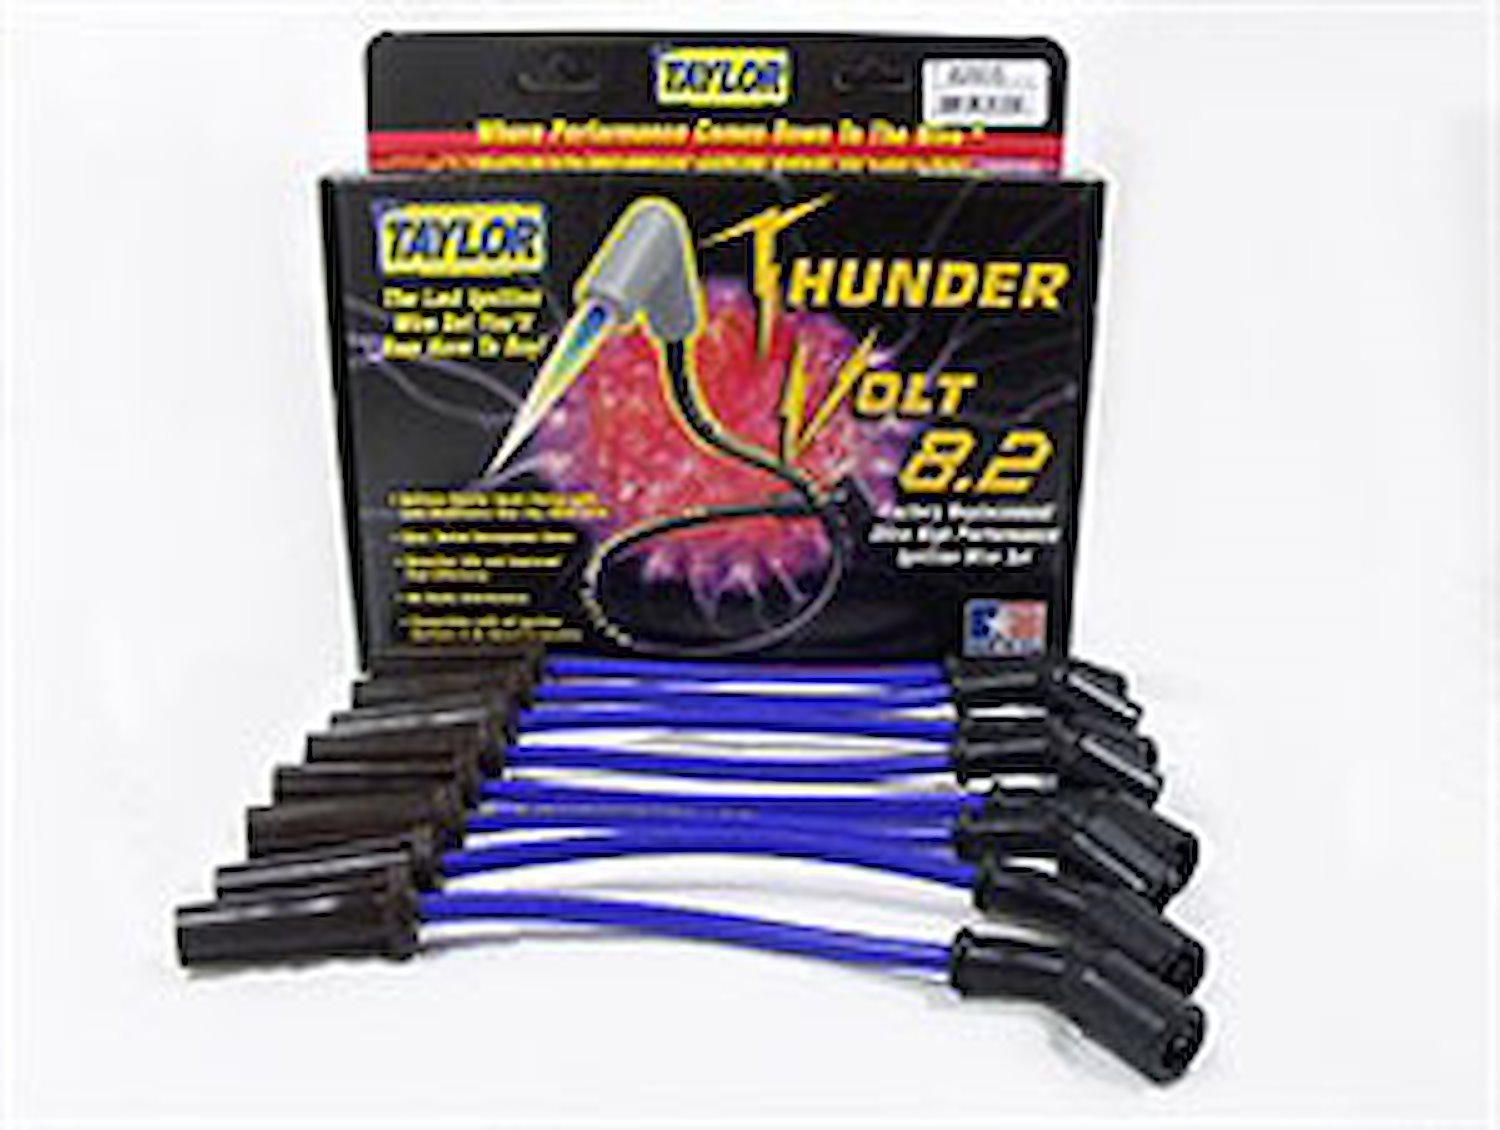 ThunderVolt 8.2mm Spark Plug Wires 1999-06 GM 4.8/5.3/6.0L V8 Engines